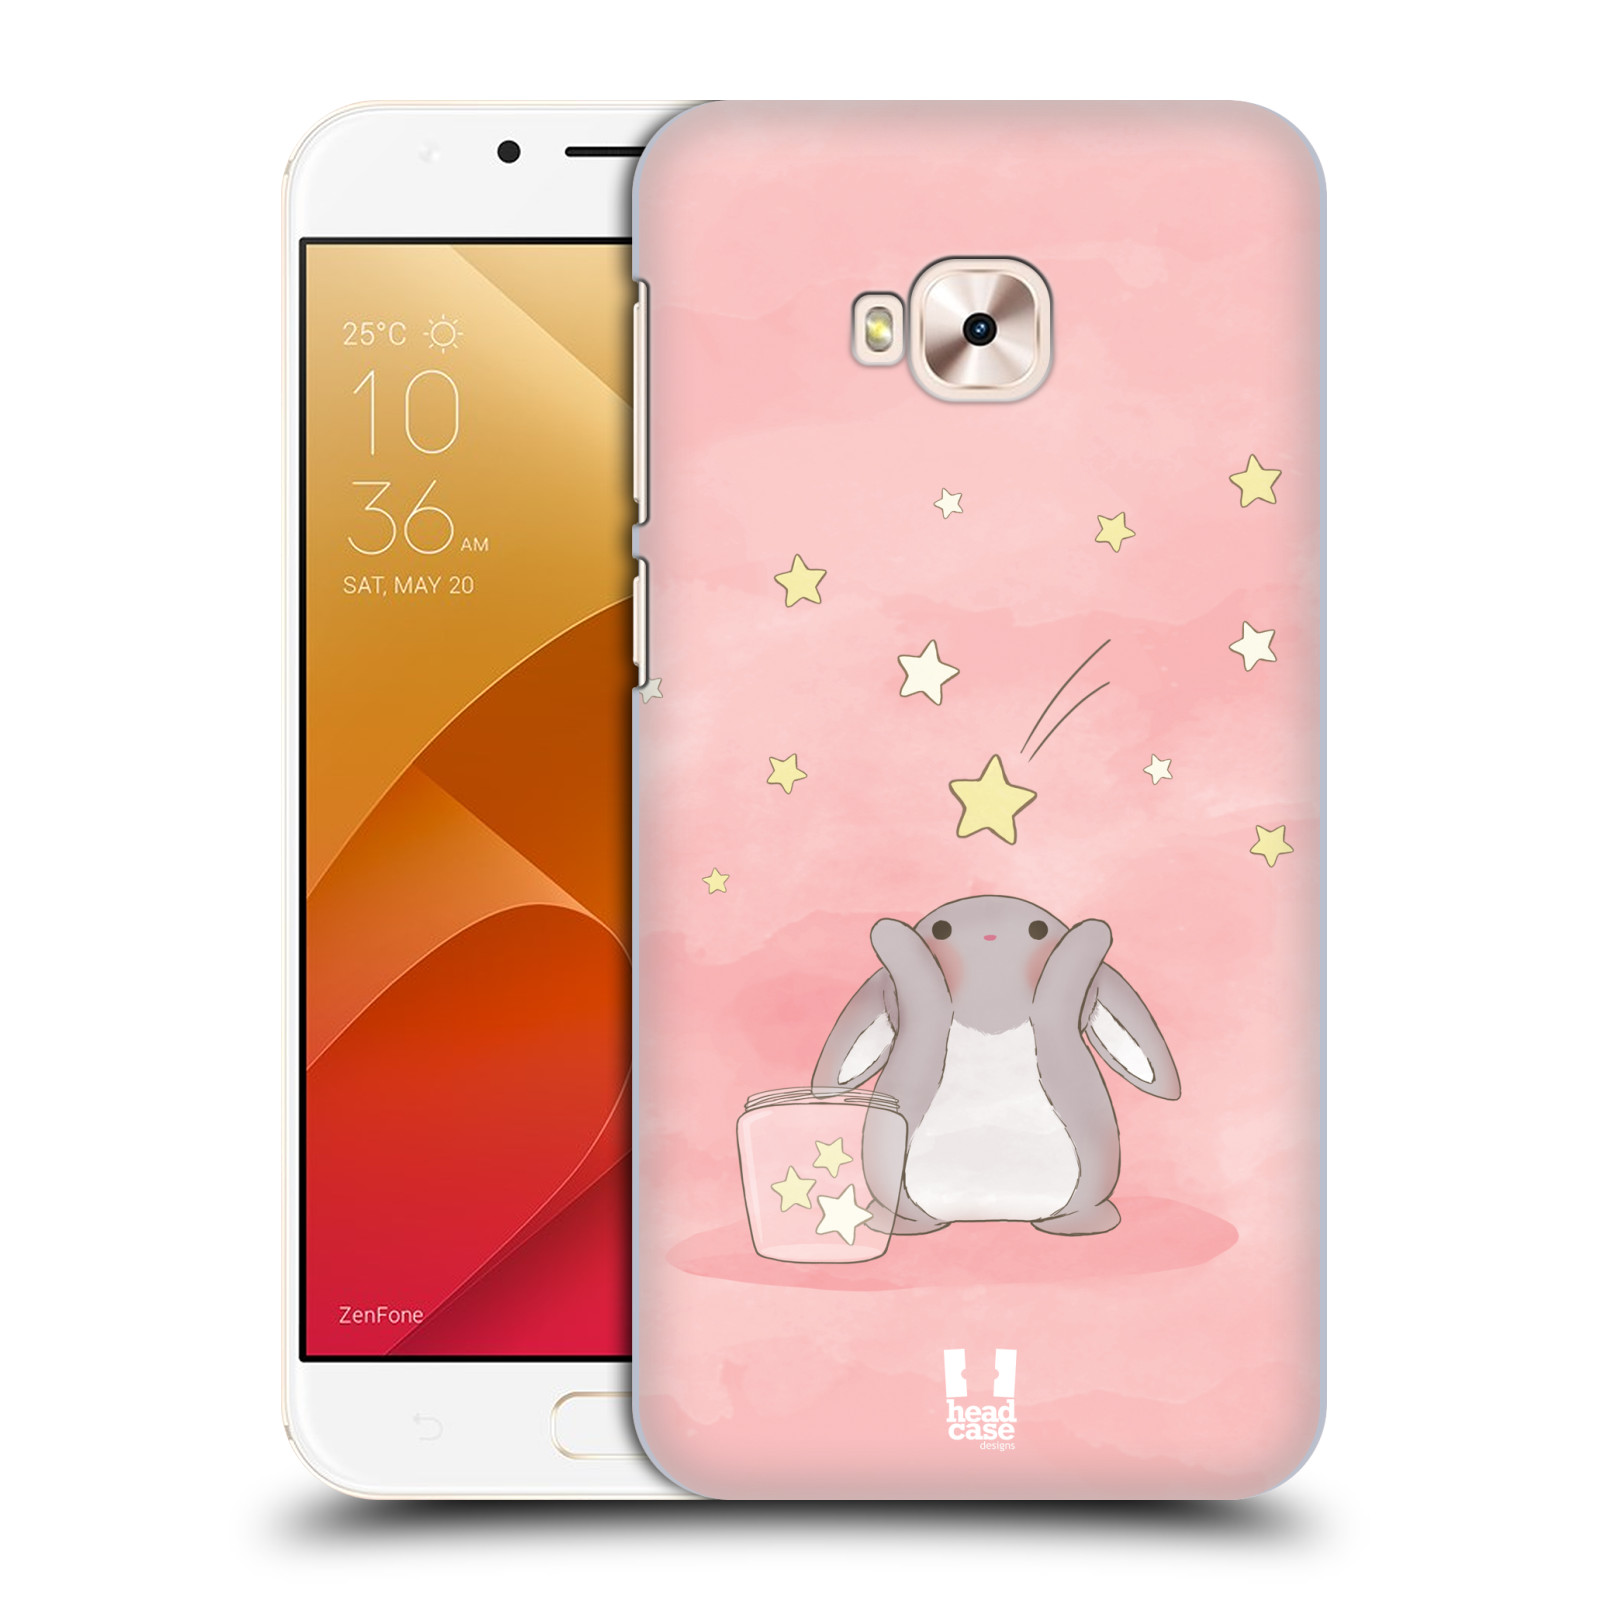 HEAD CASE plastový obal na mobil Asus Zenfone 4 Selfie Pro ZD552KL vzor králíček a hvězdy růžová